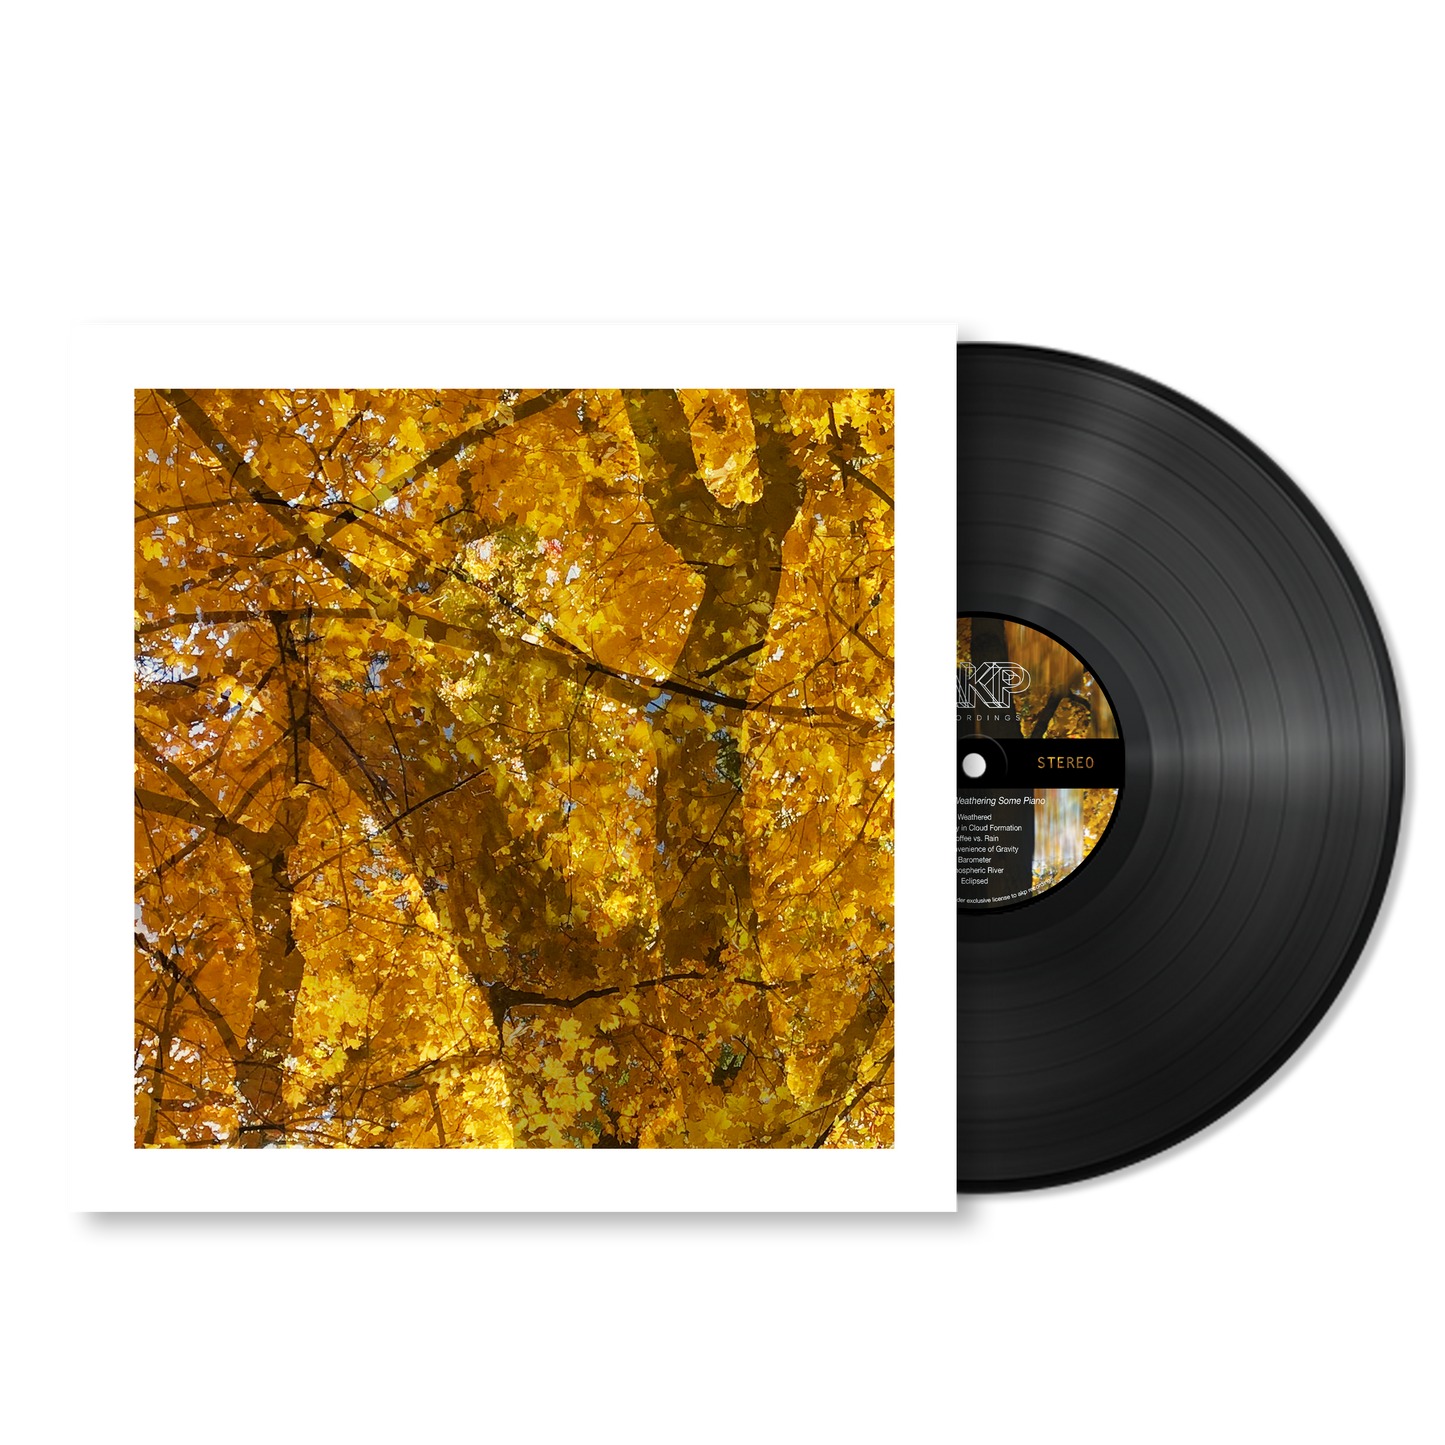 Howe Gelb - Weathering Some Piano - Vinyl LP